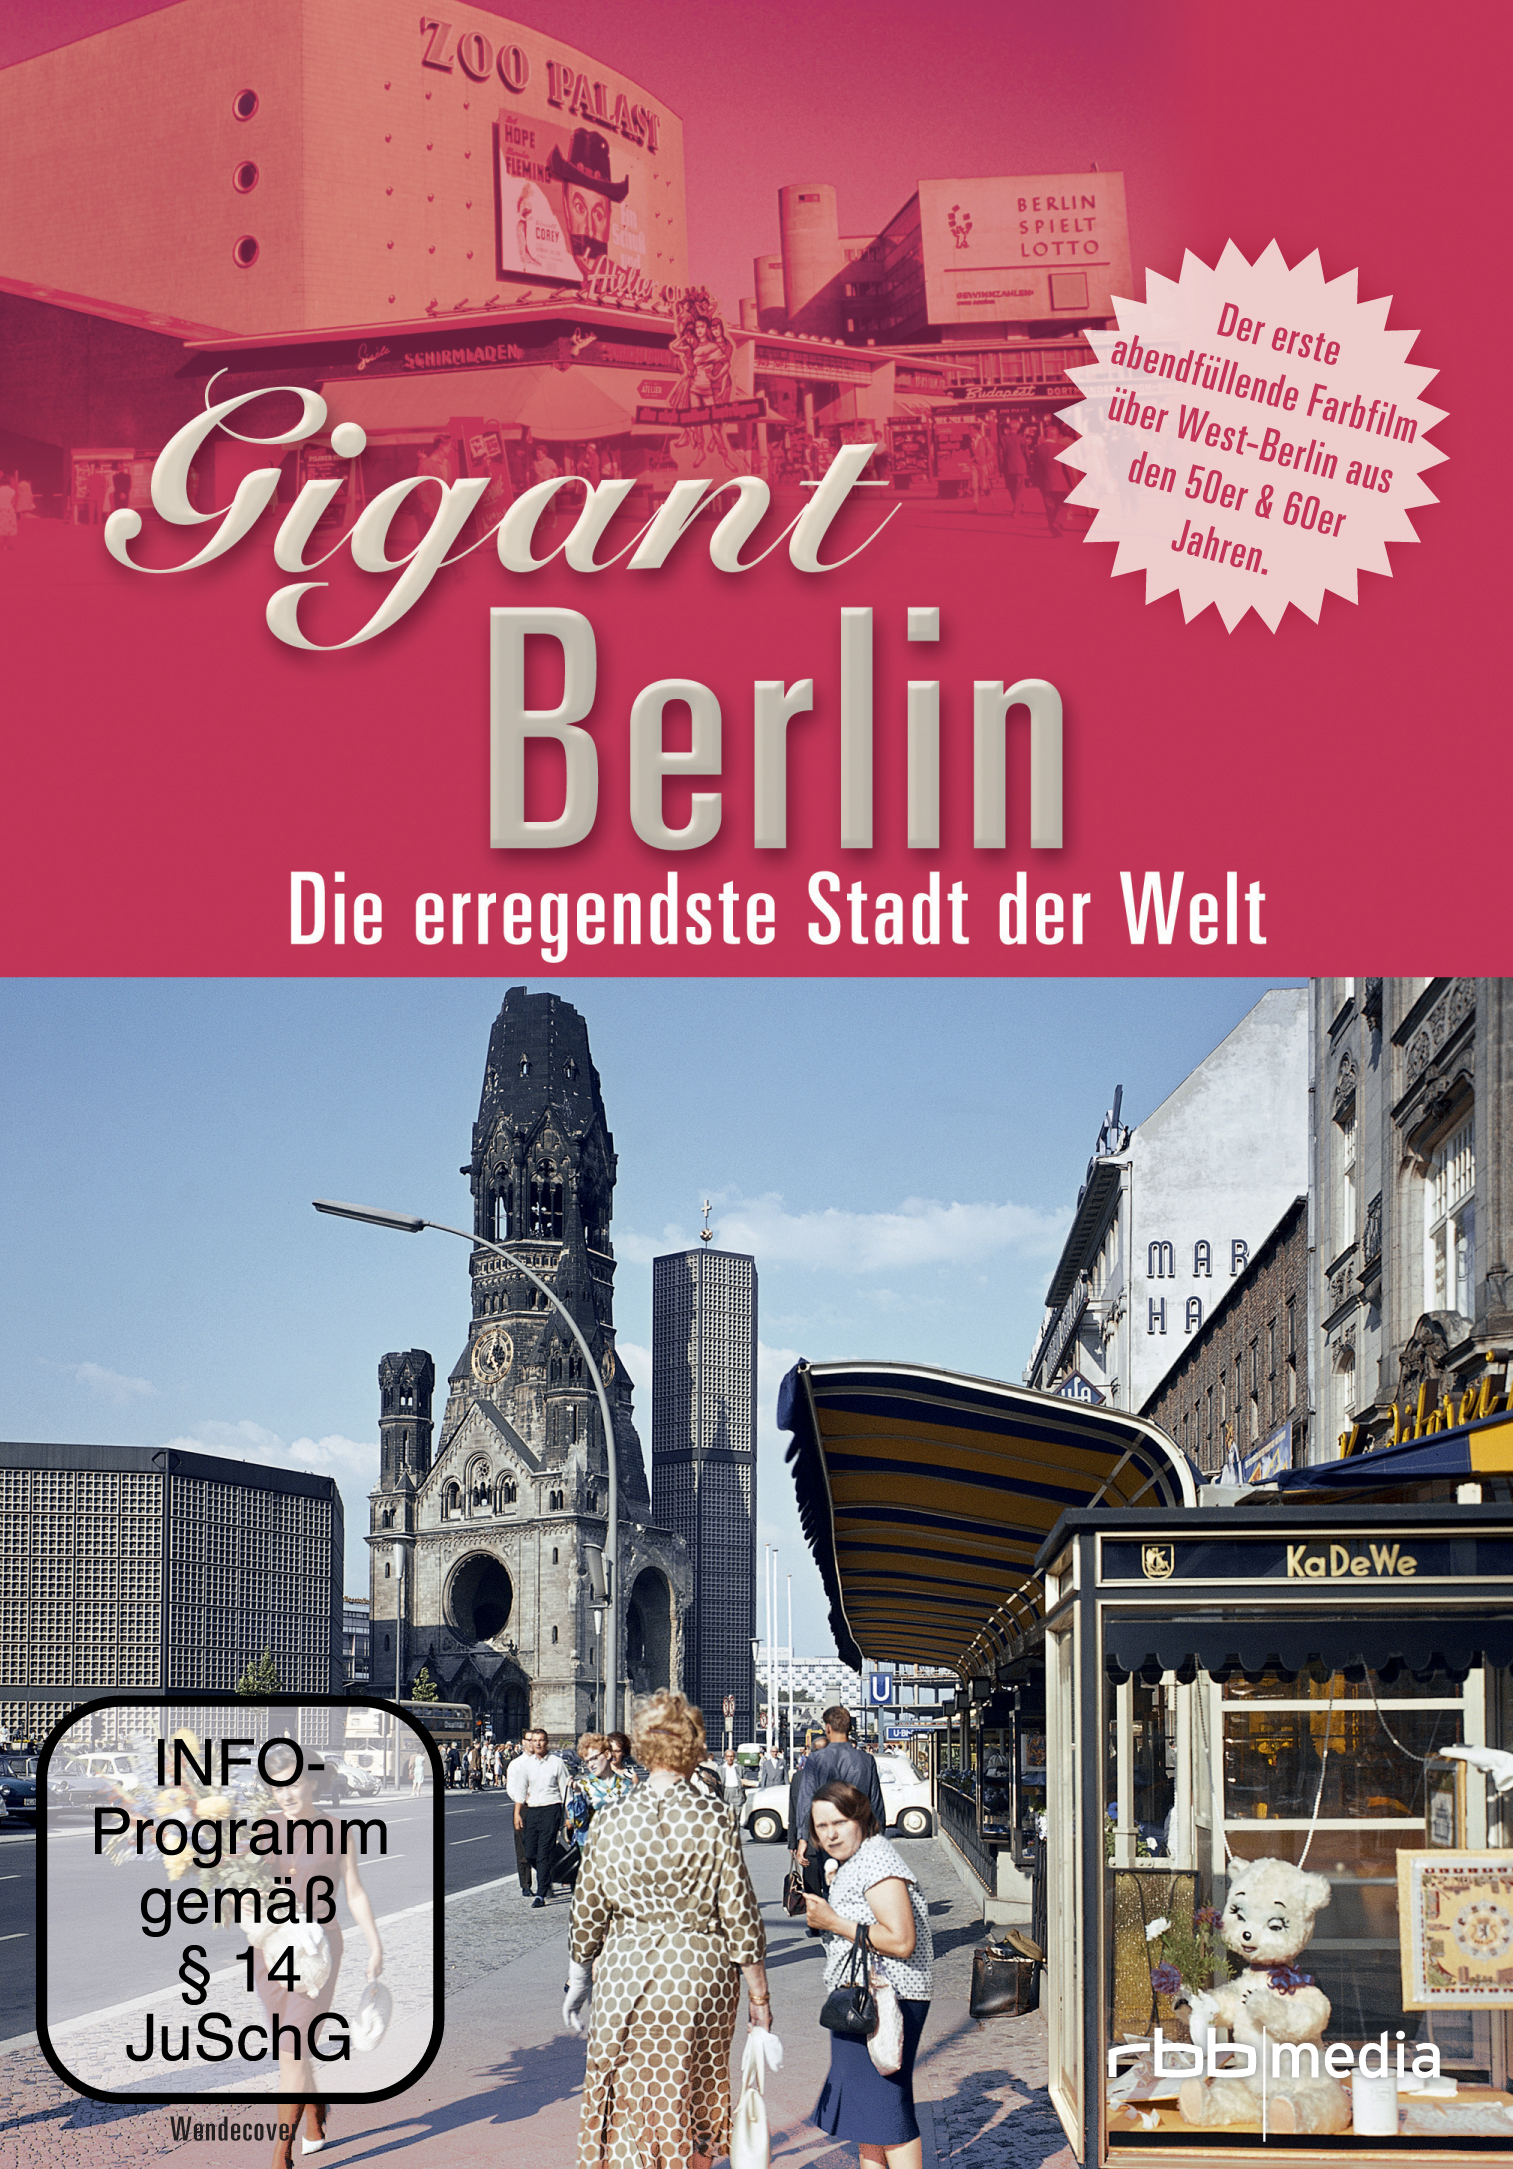 Gigant Berlin - Welt Die Stadt der erregendeste DVD